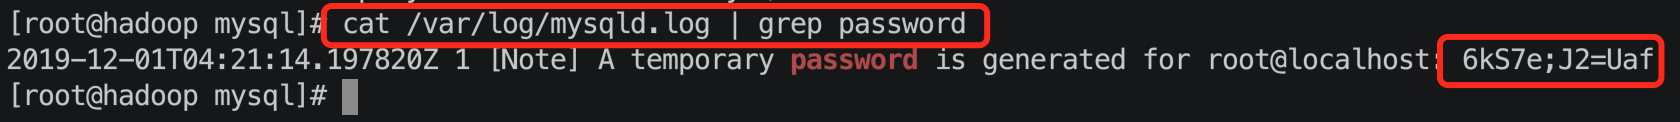 デフォルト生成されたパスワードを確認